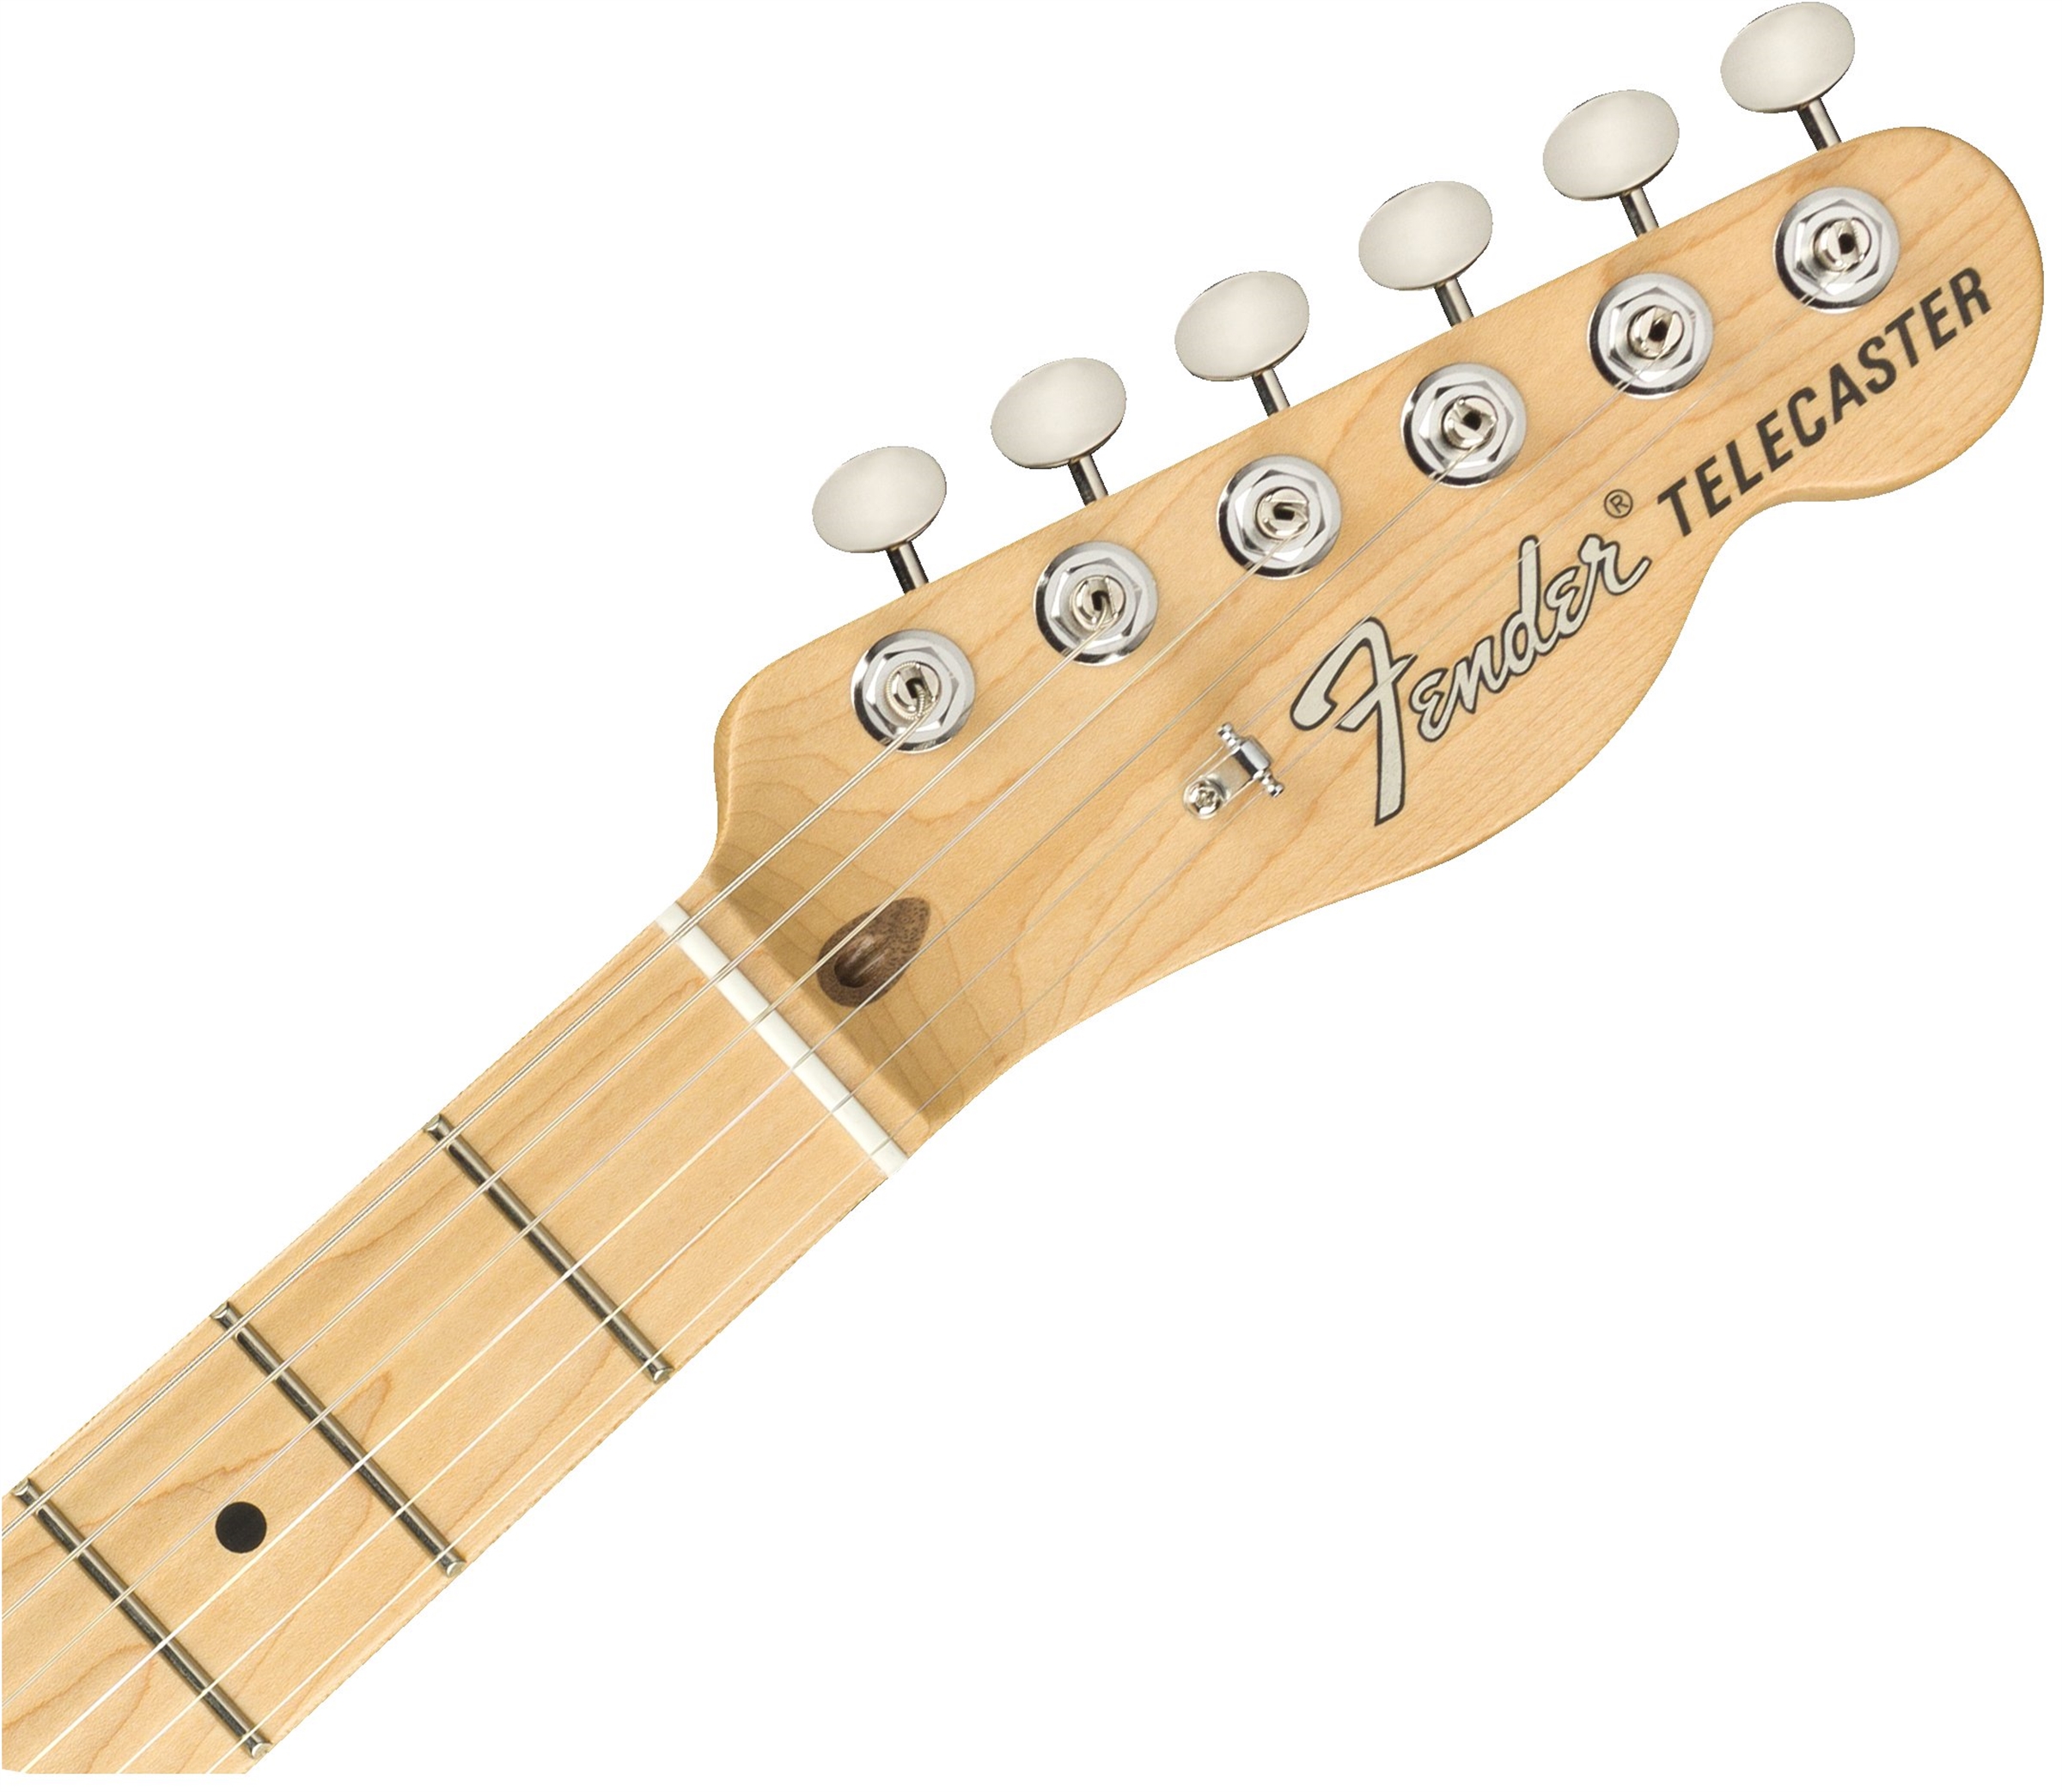 Fender Tele American Performer Usa Mn - Penny - Guitarra eléctrica con forma de tel - Variation 4